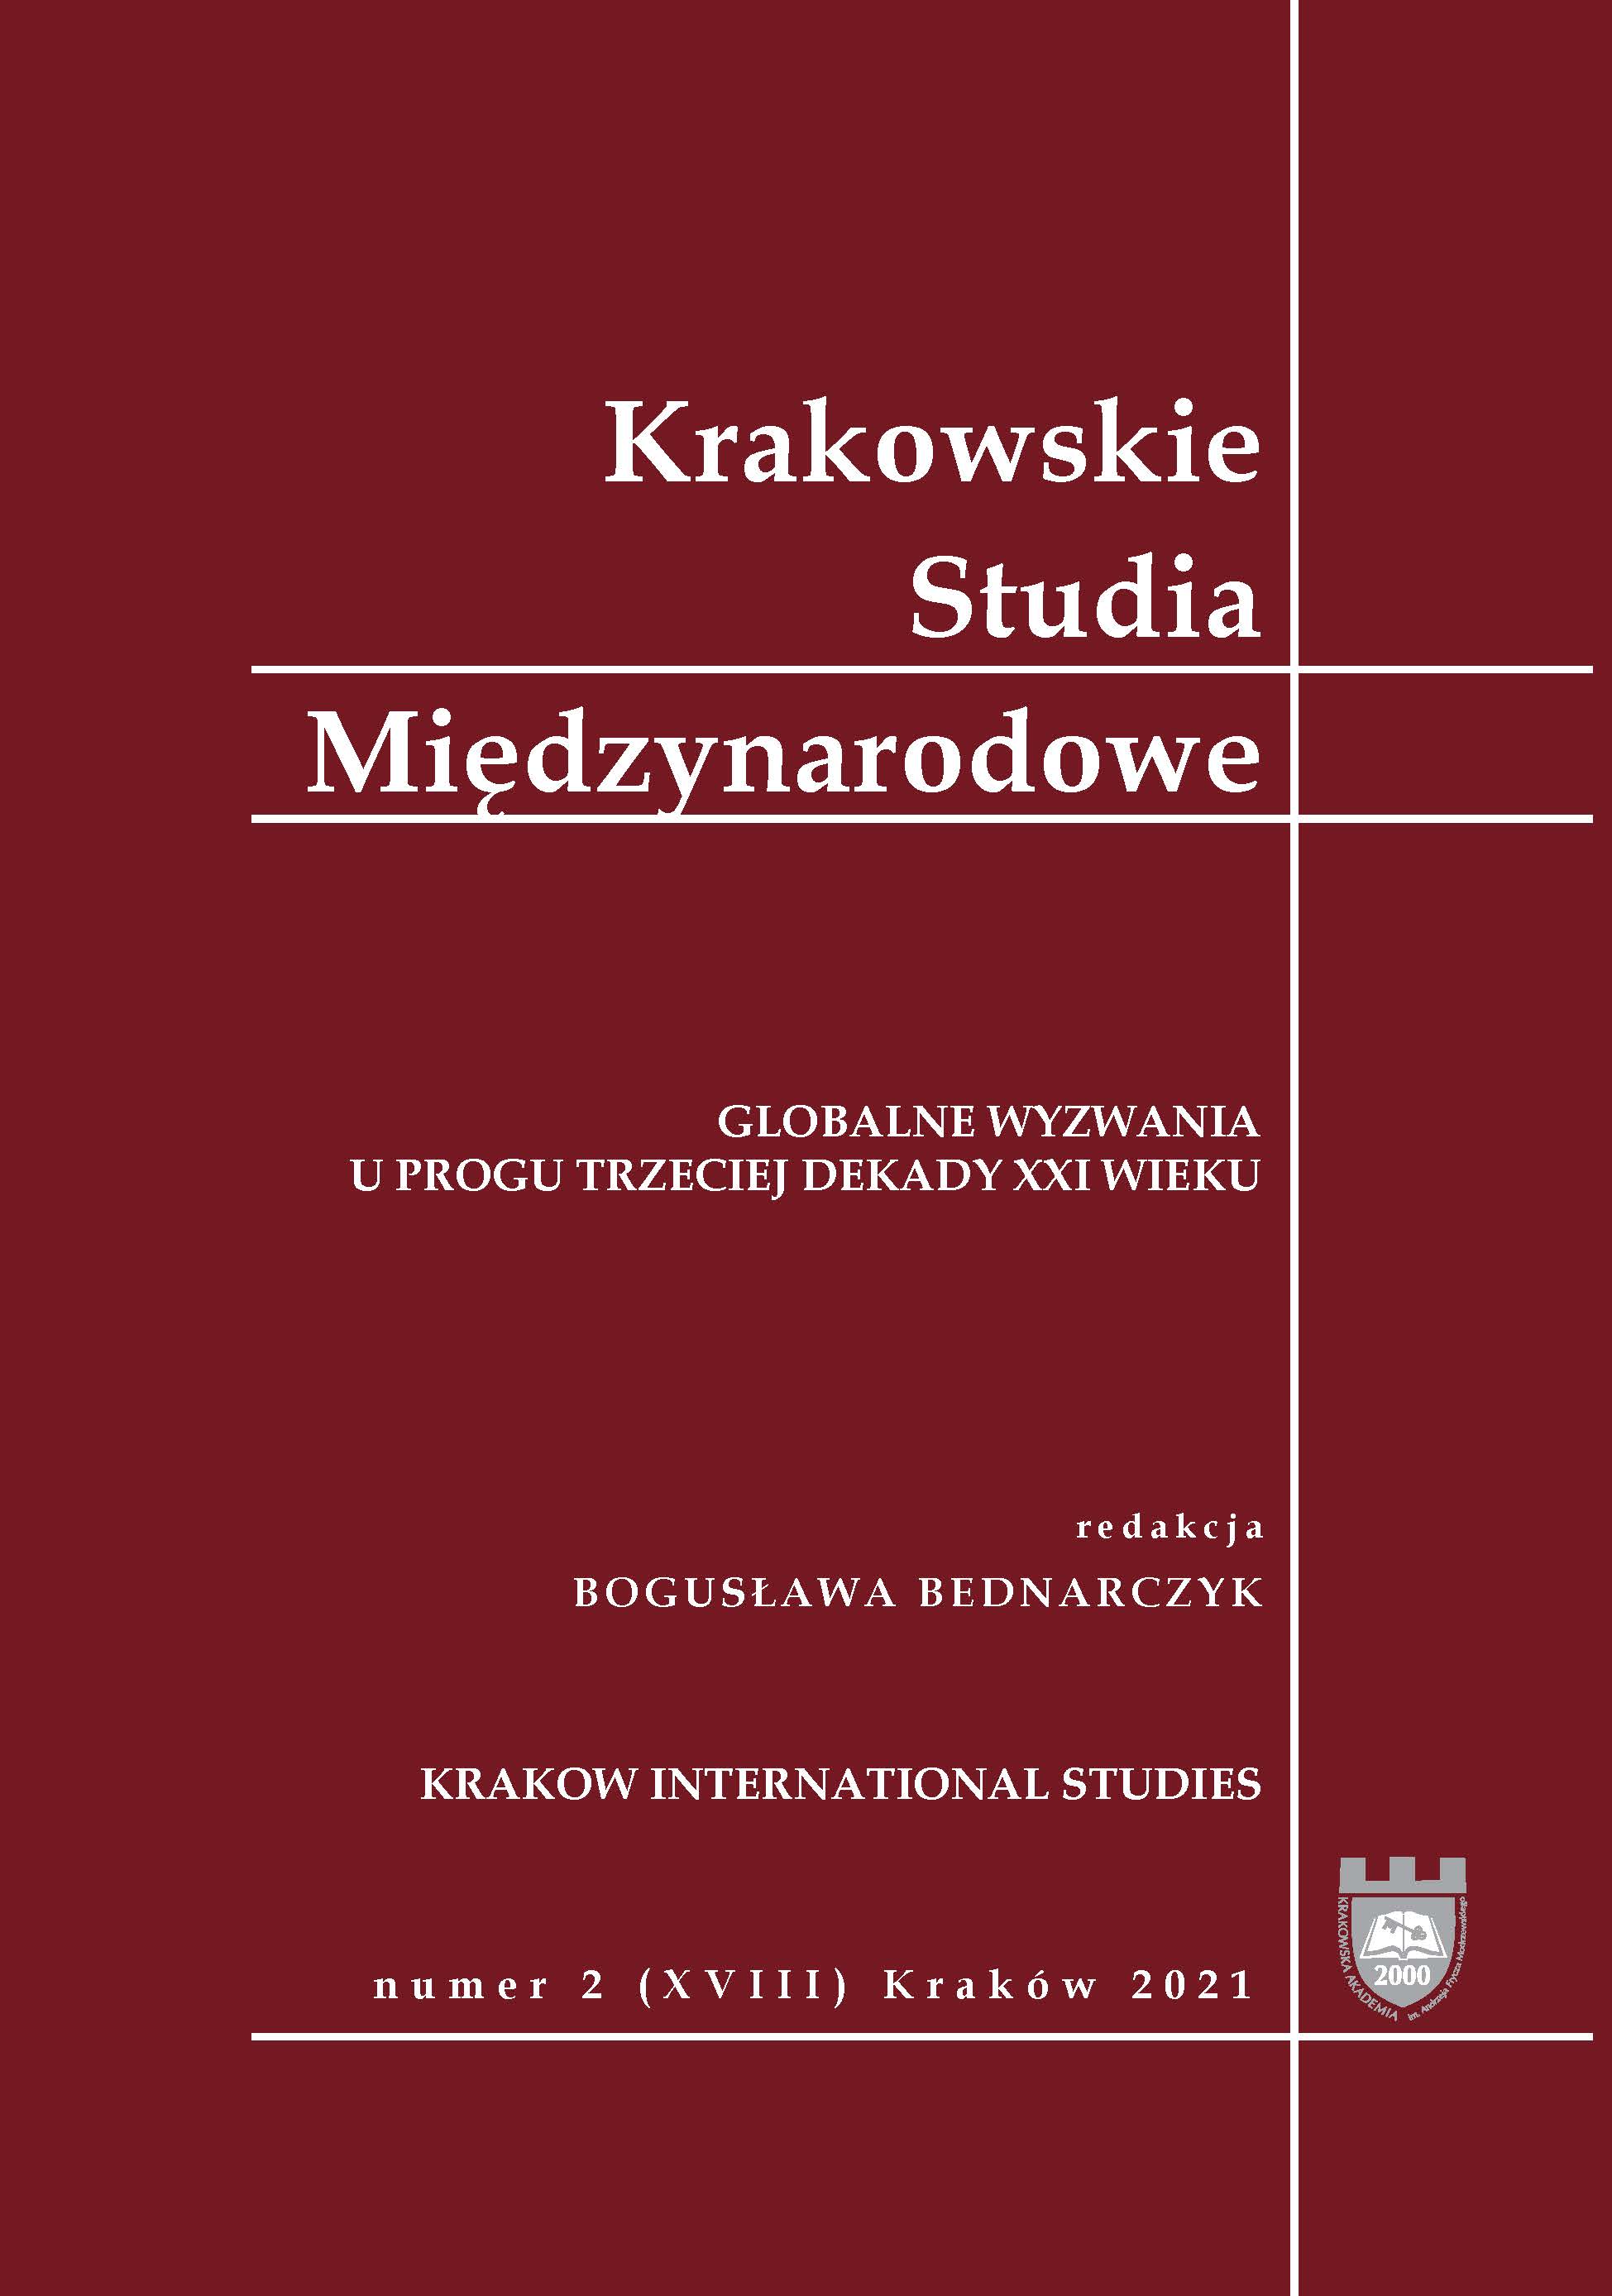 Wuma ier Yilam u, Neoliberalism and Post-Soviet Transition. Kazakhstan and Uzbekistan [Palgrave Macm illan, New Yo rk 2018, ss . 202]